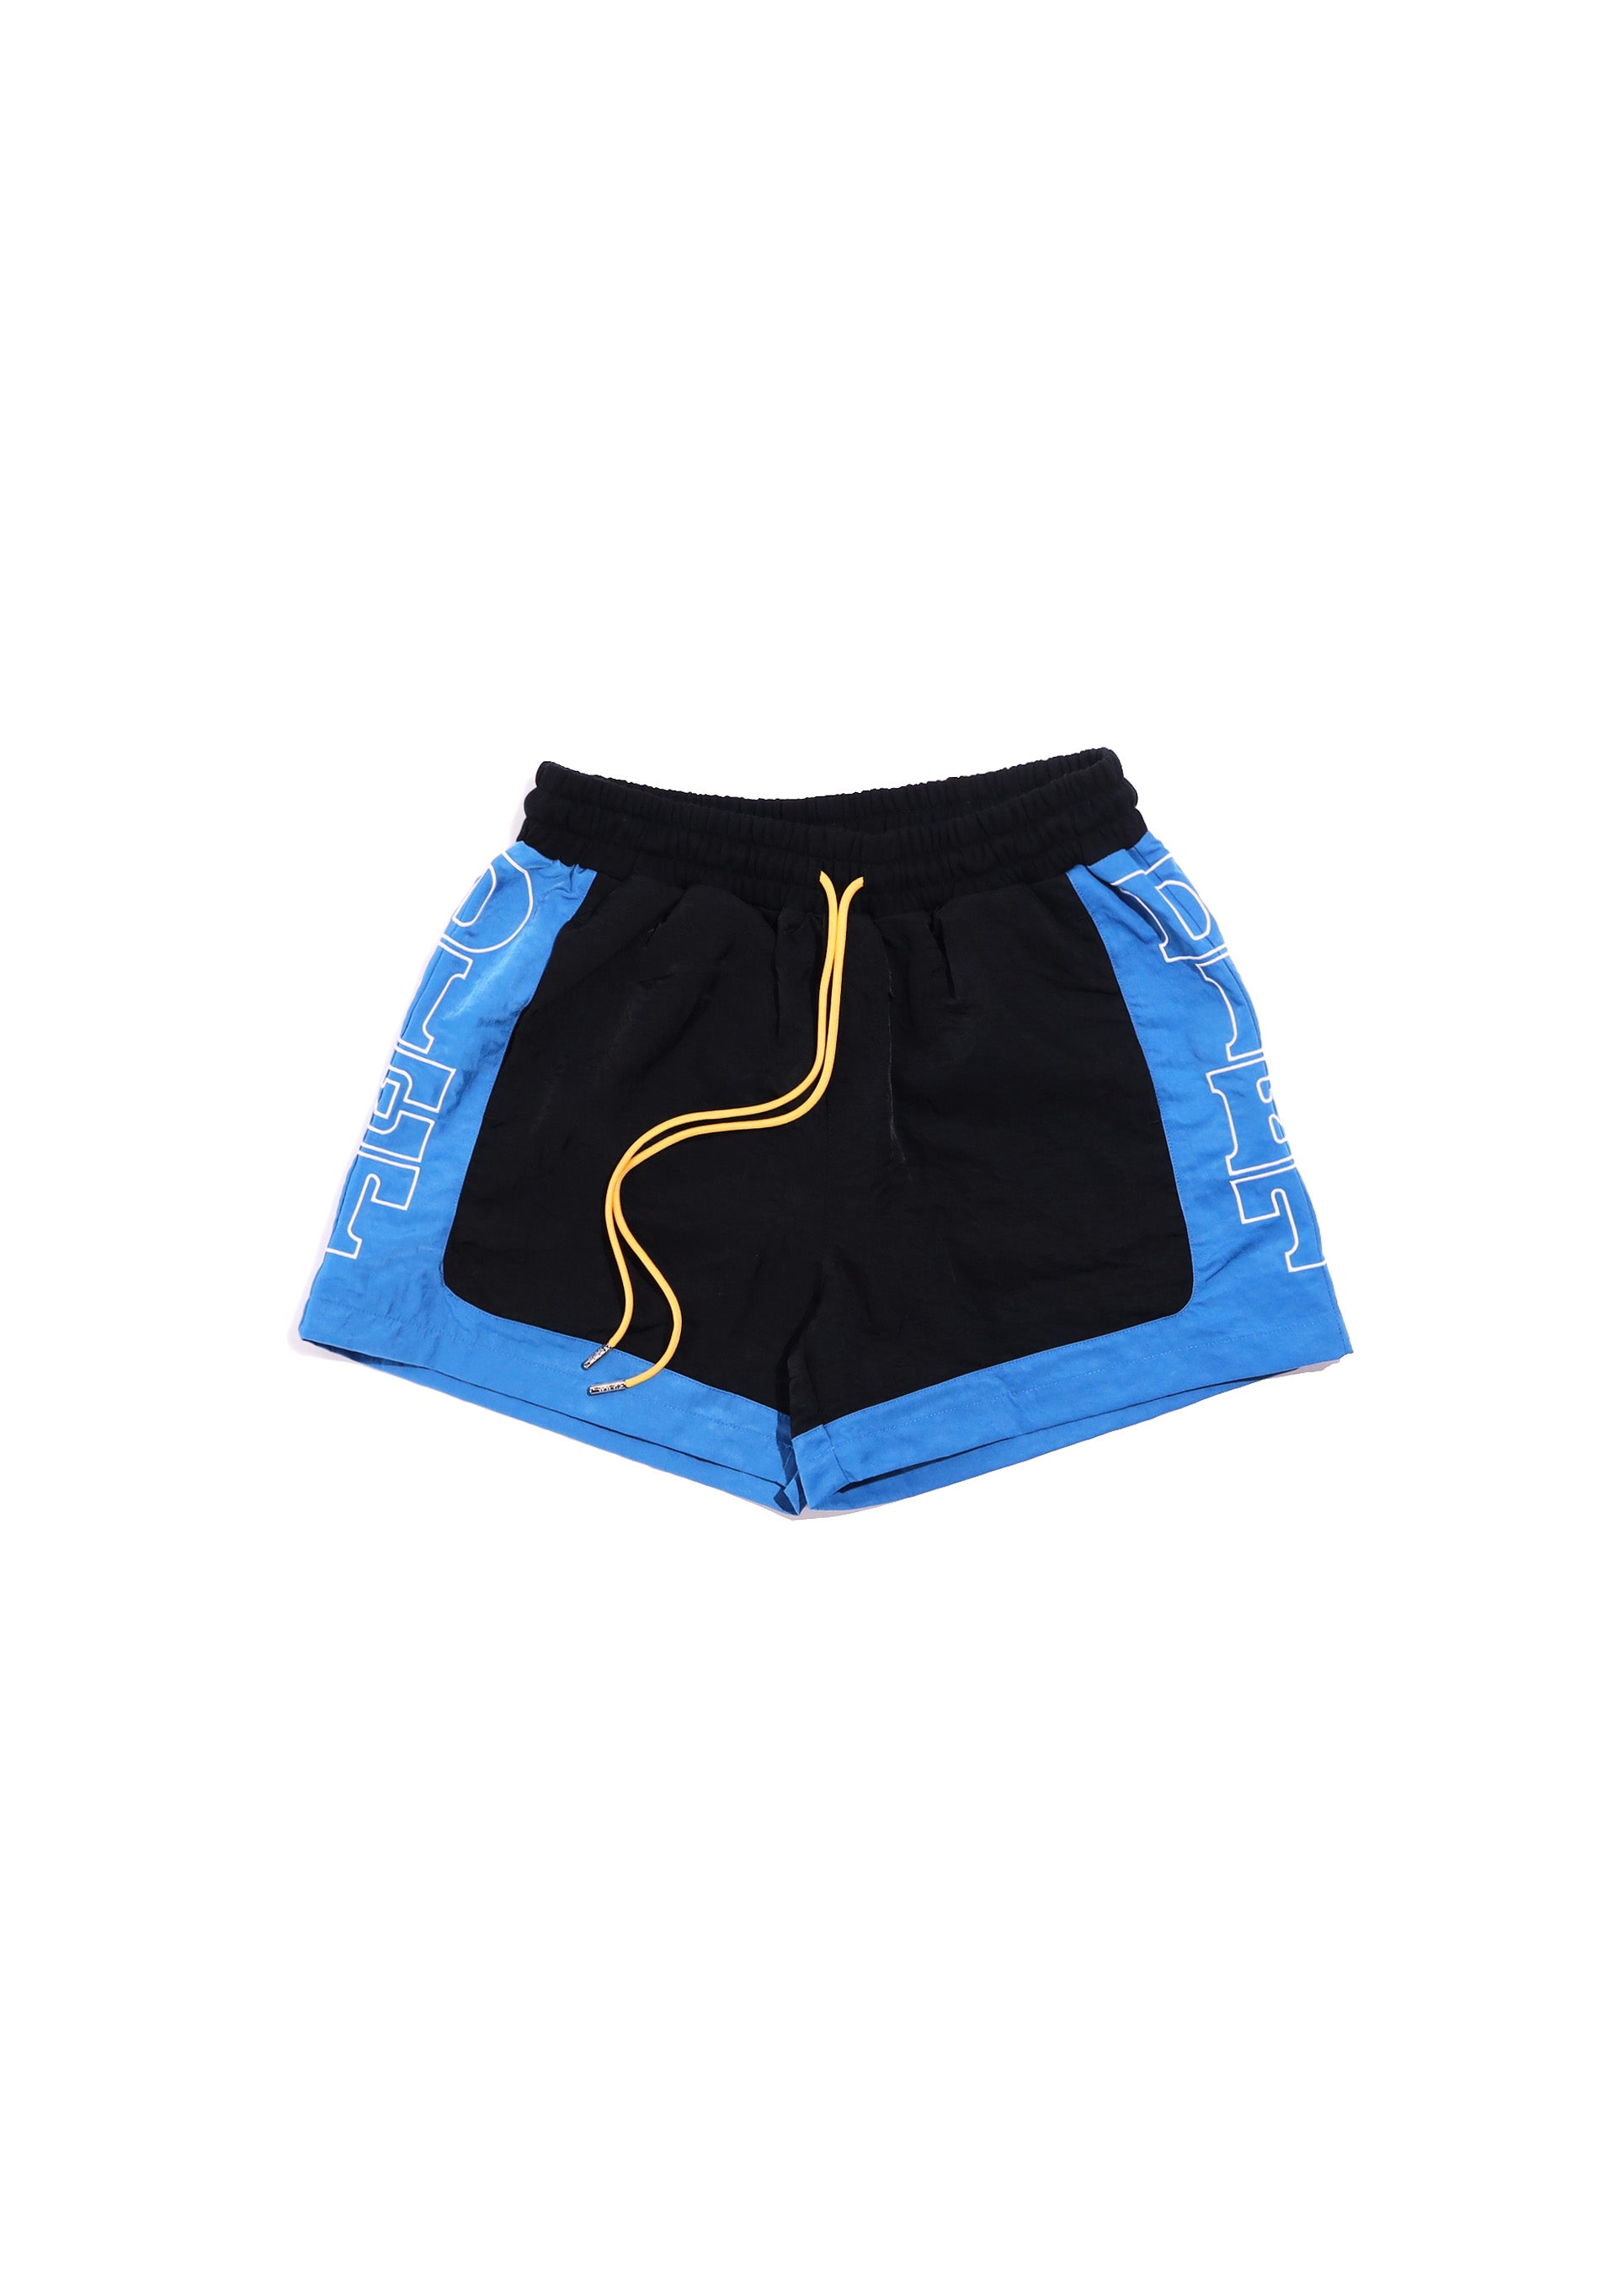 Nylon Row Shorts - Black/Blue